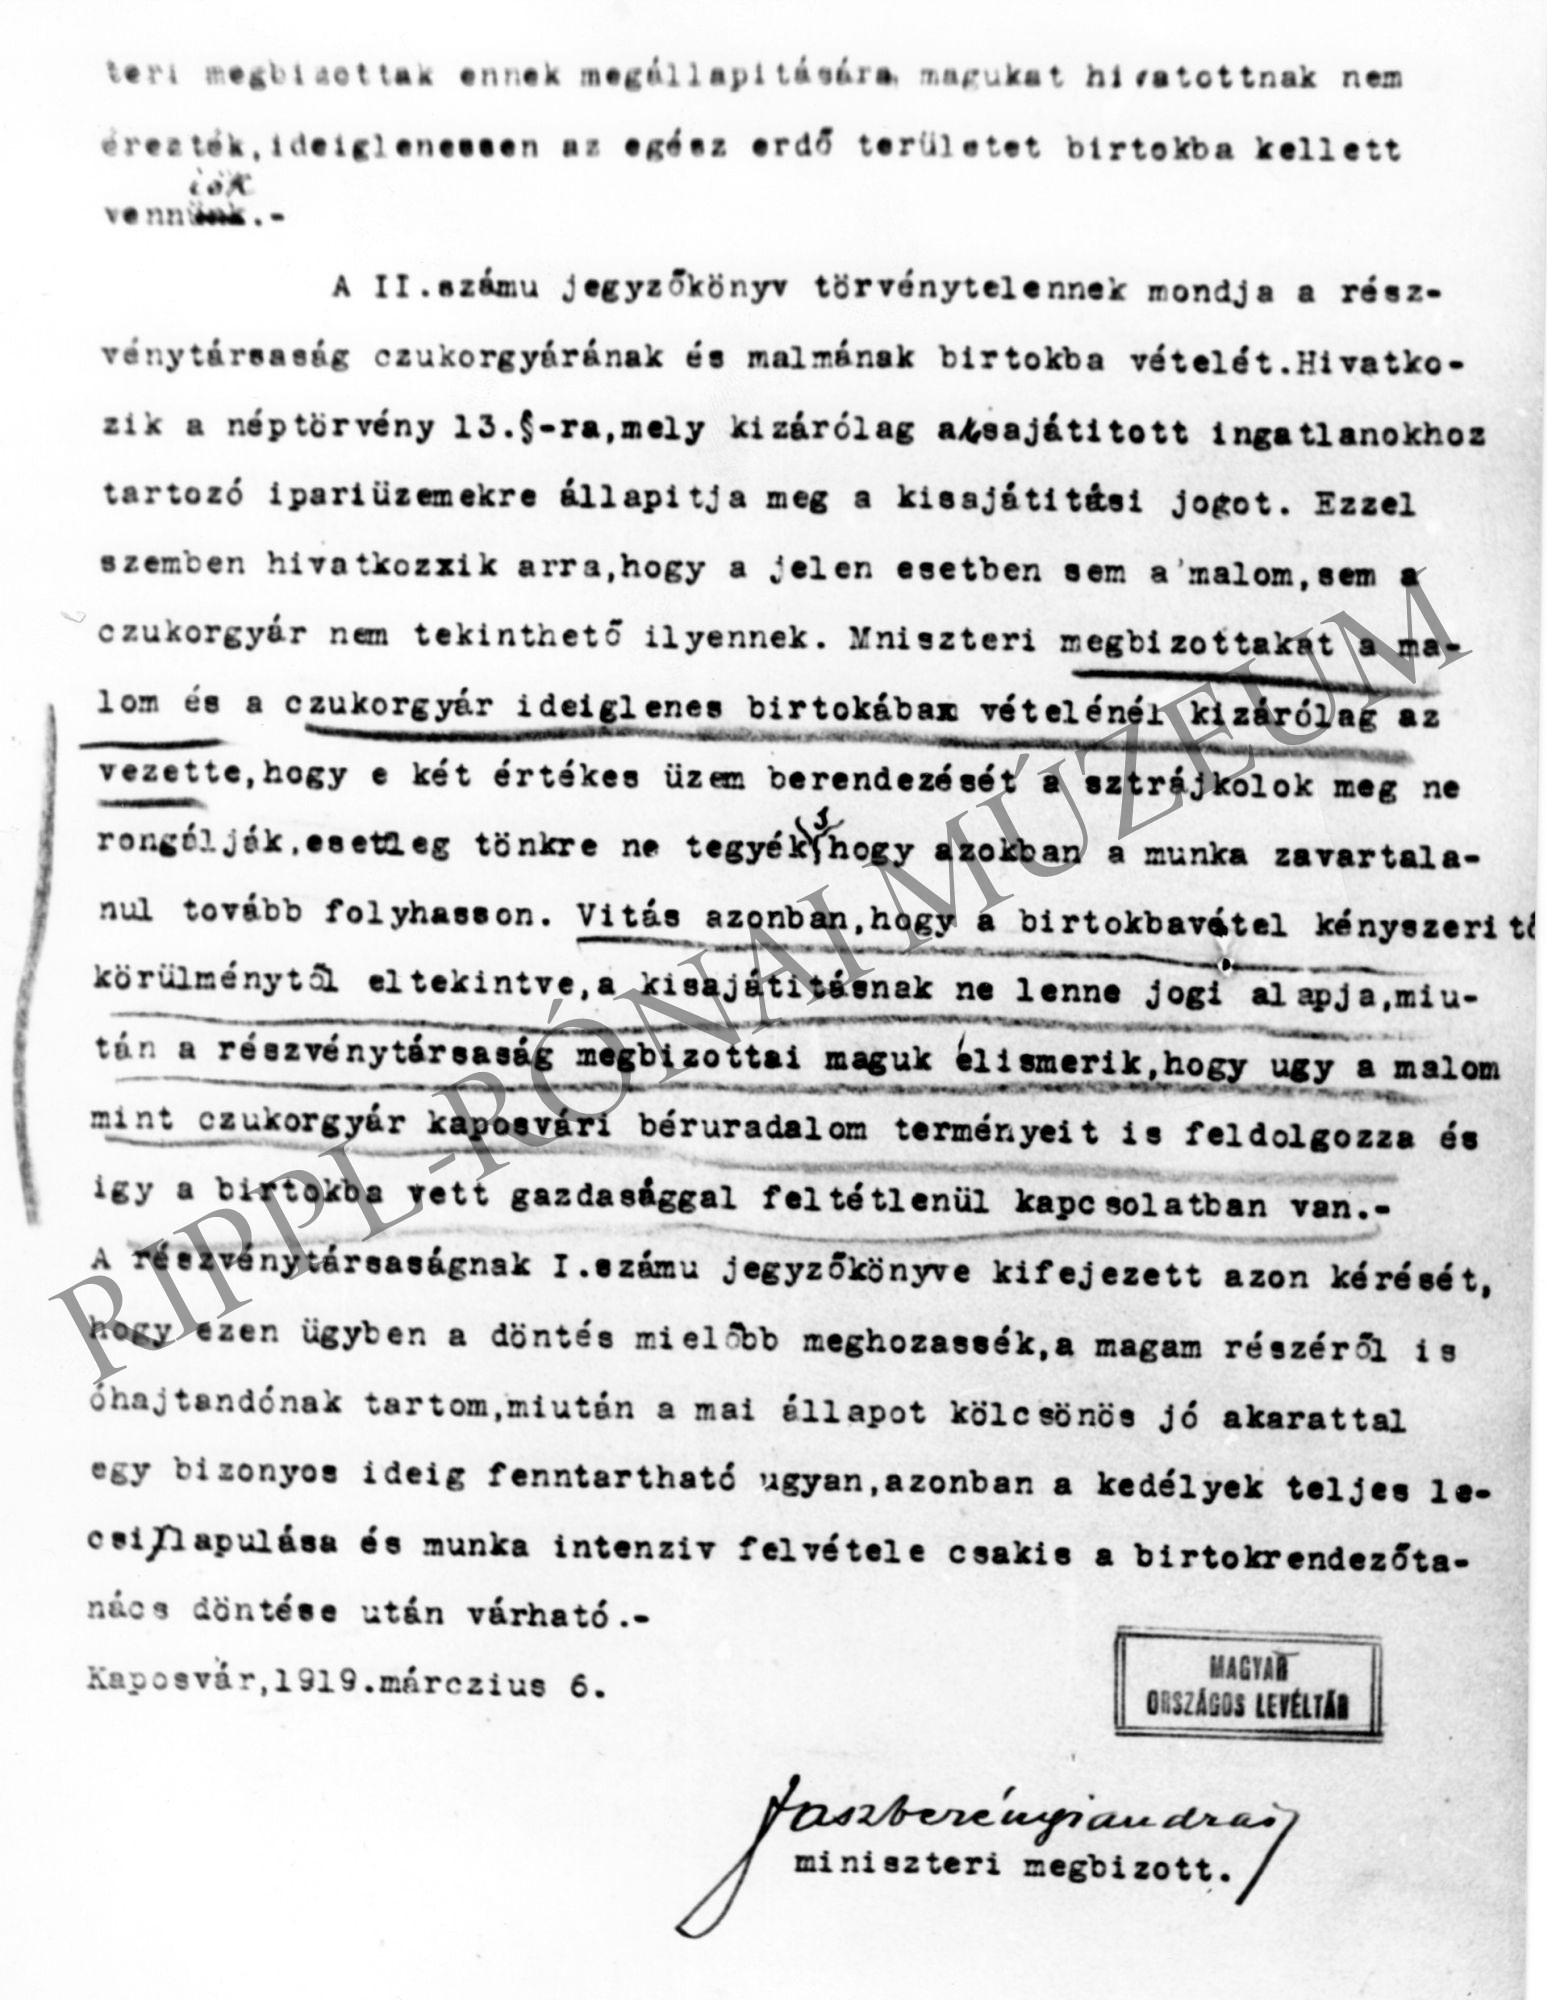 Jászberényi András miniszteri megbizott 1919. március 6-i kaposvári levele a cukorgyár ideiglenes birtokba vételéről (Rippl-Rónai Múzeum CC BY-NC-SA)